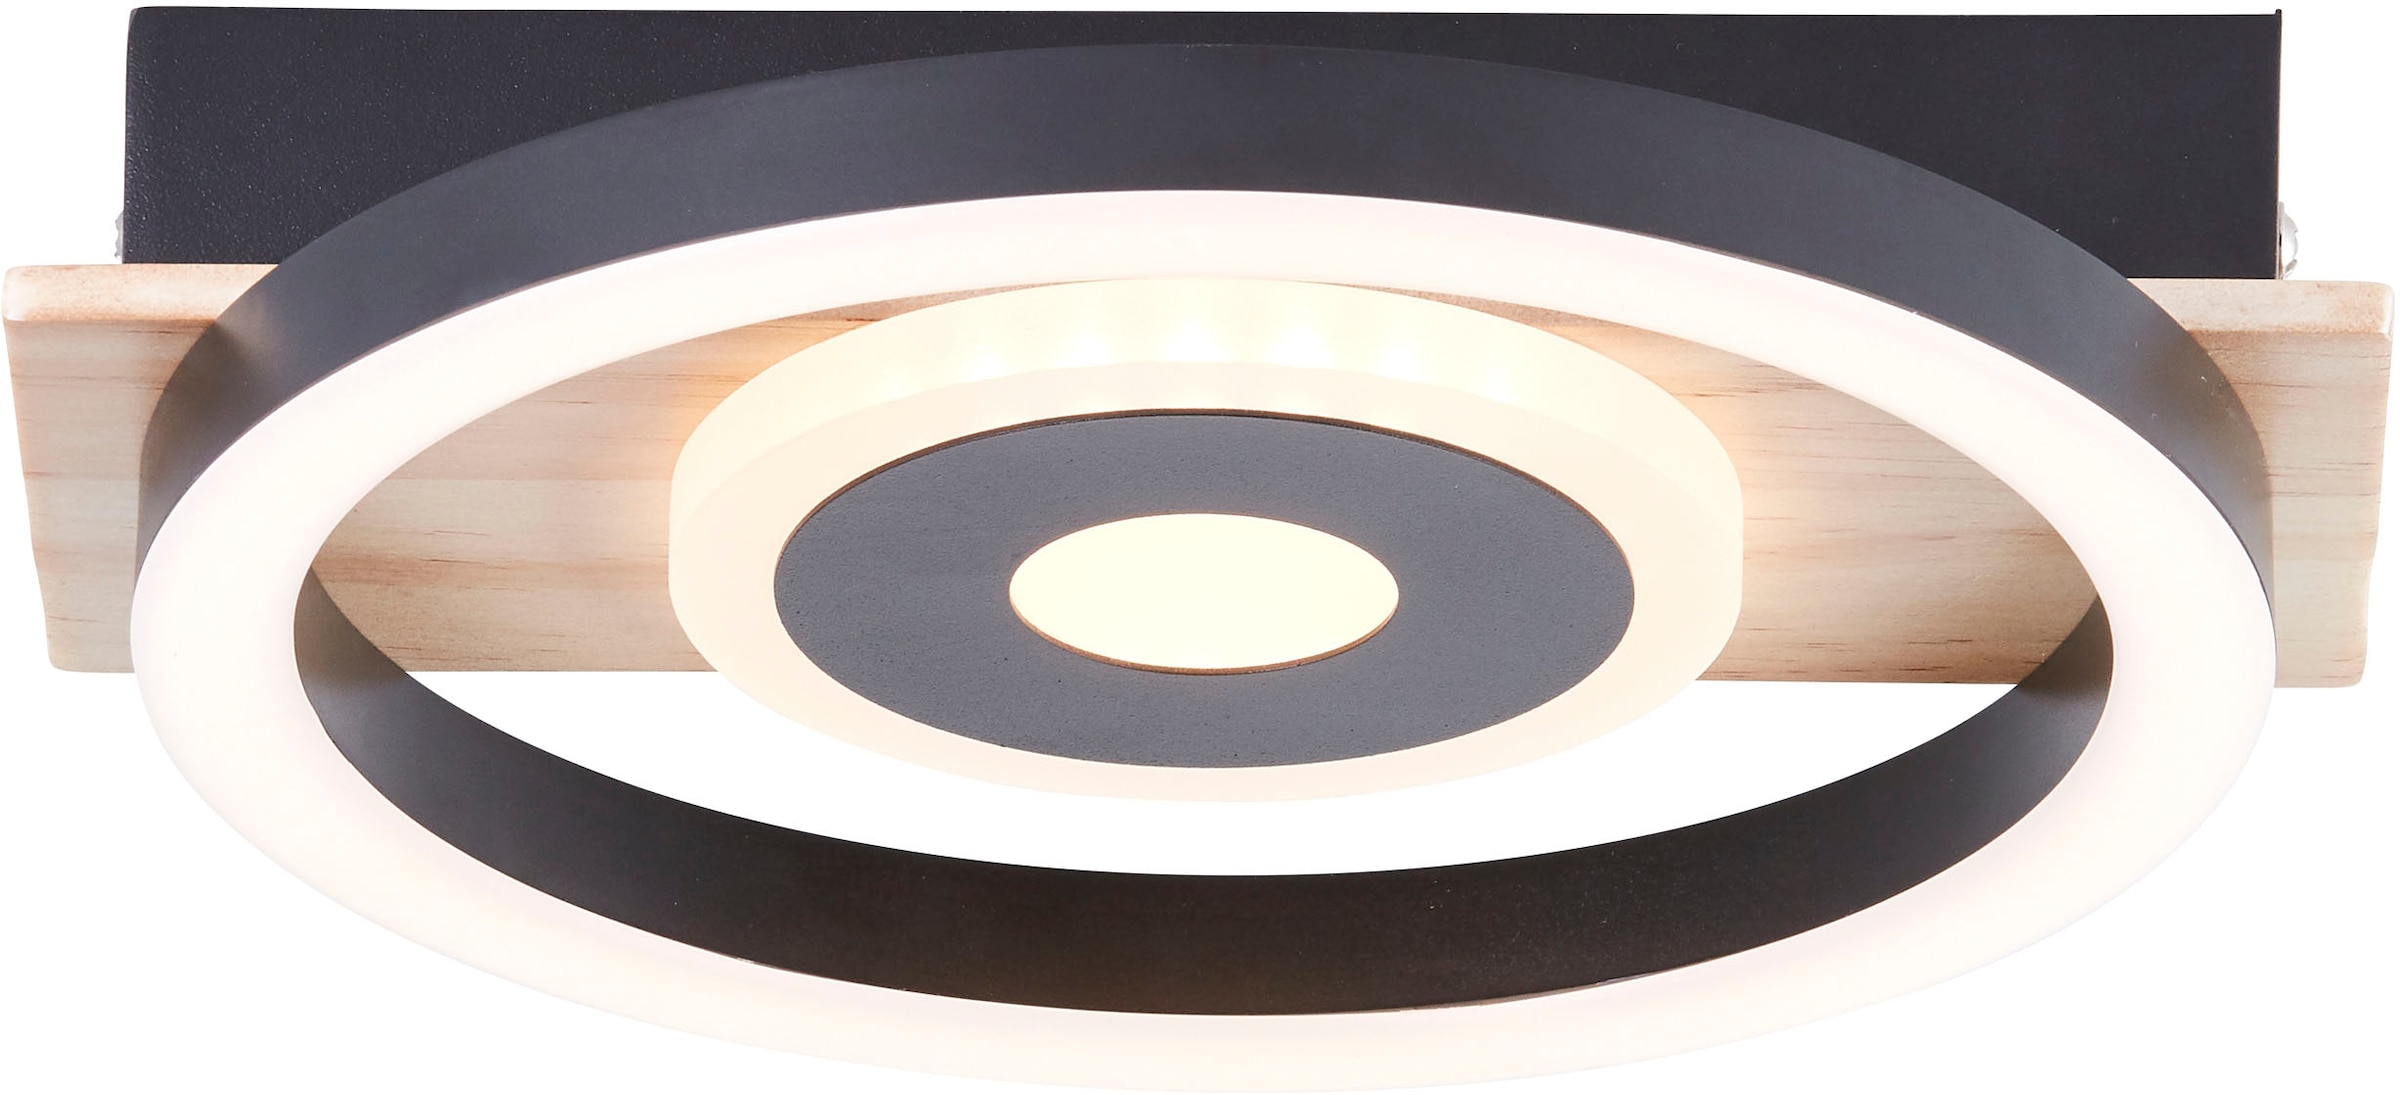 my home LED Deckenleuchte »Lysann Deckenlampe«, 22 x 20 cm, 12 W, 1100 lm, 3000 K, Holz/Metall, braun/schwarz